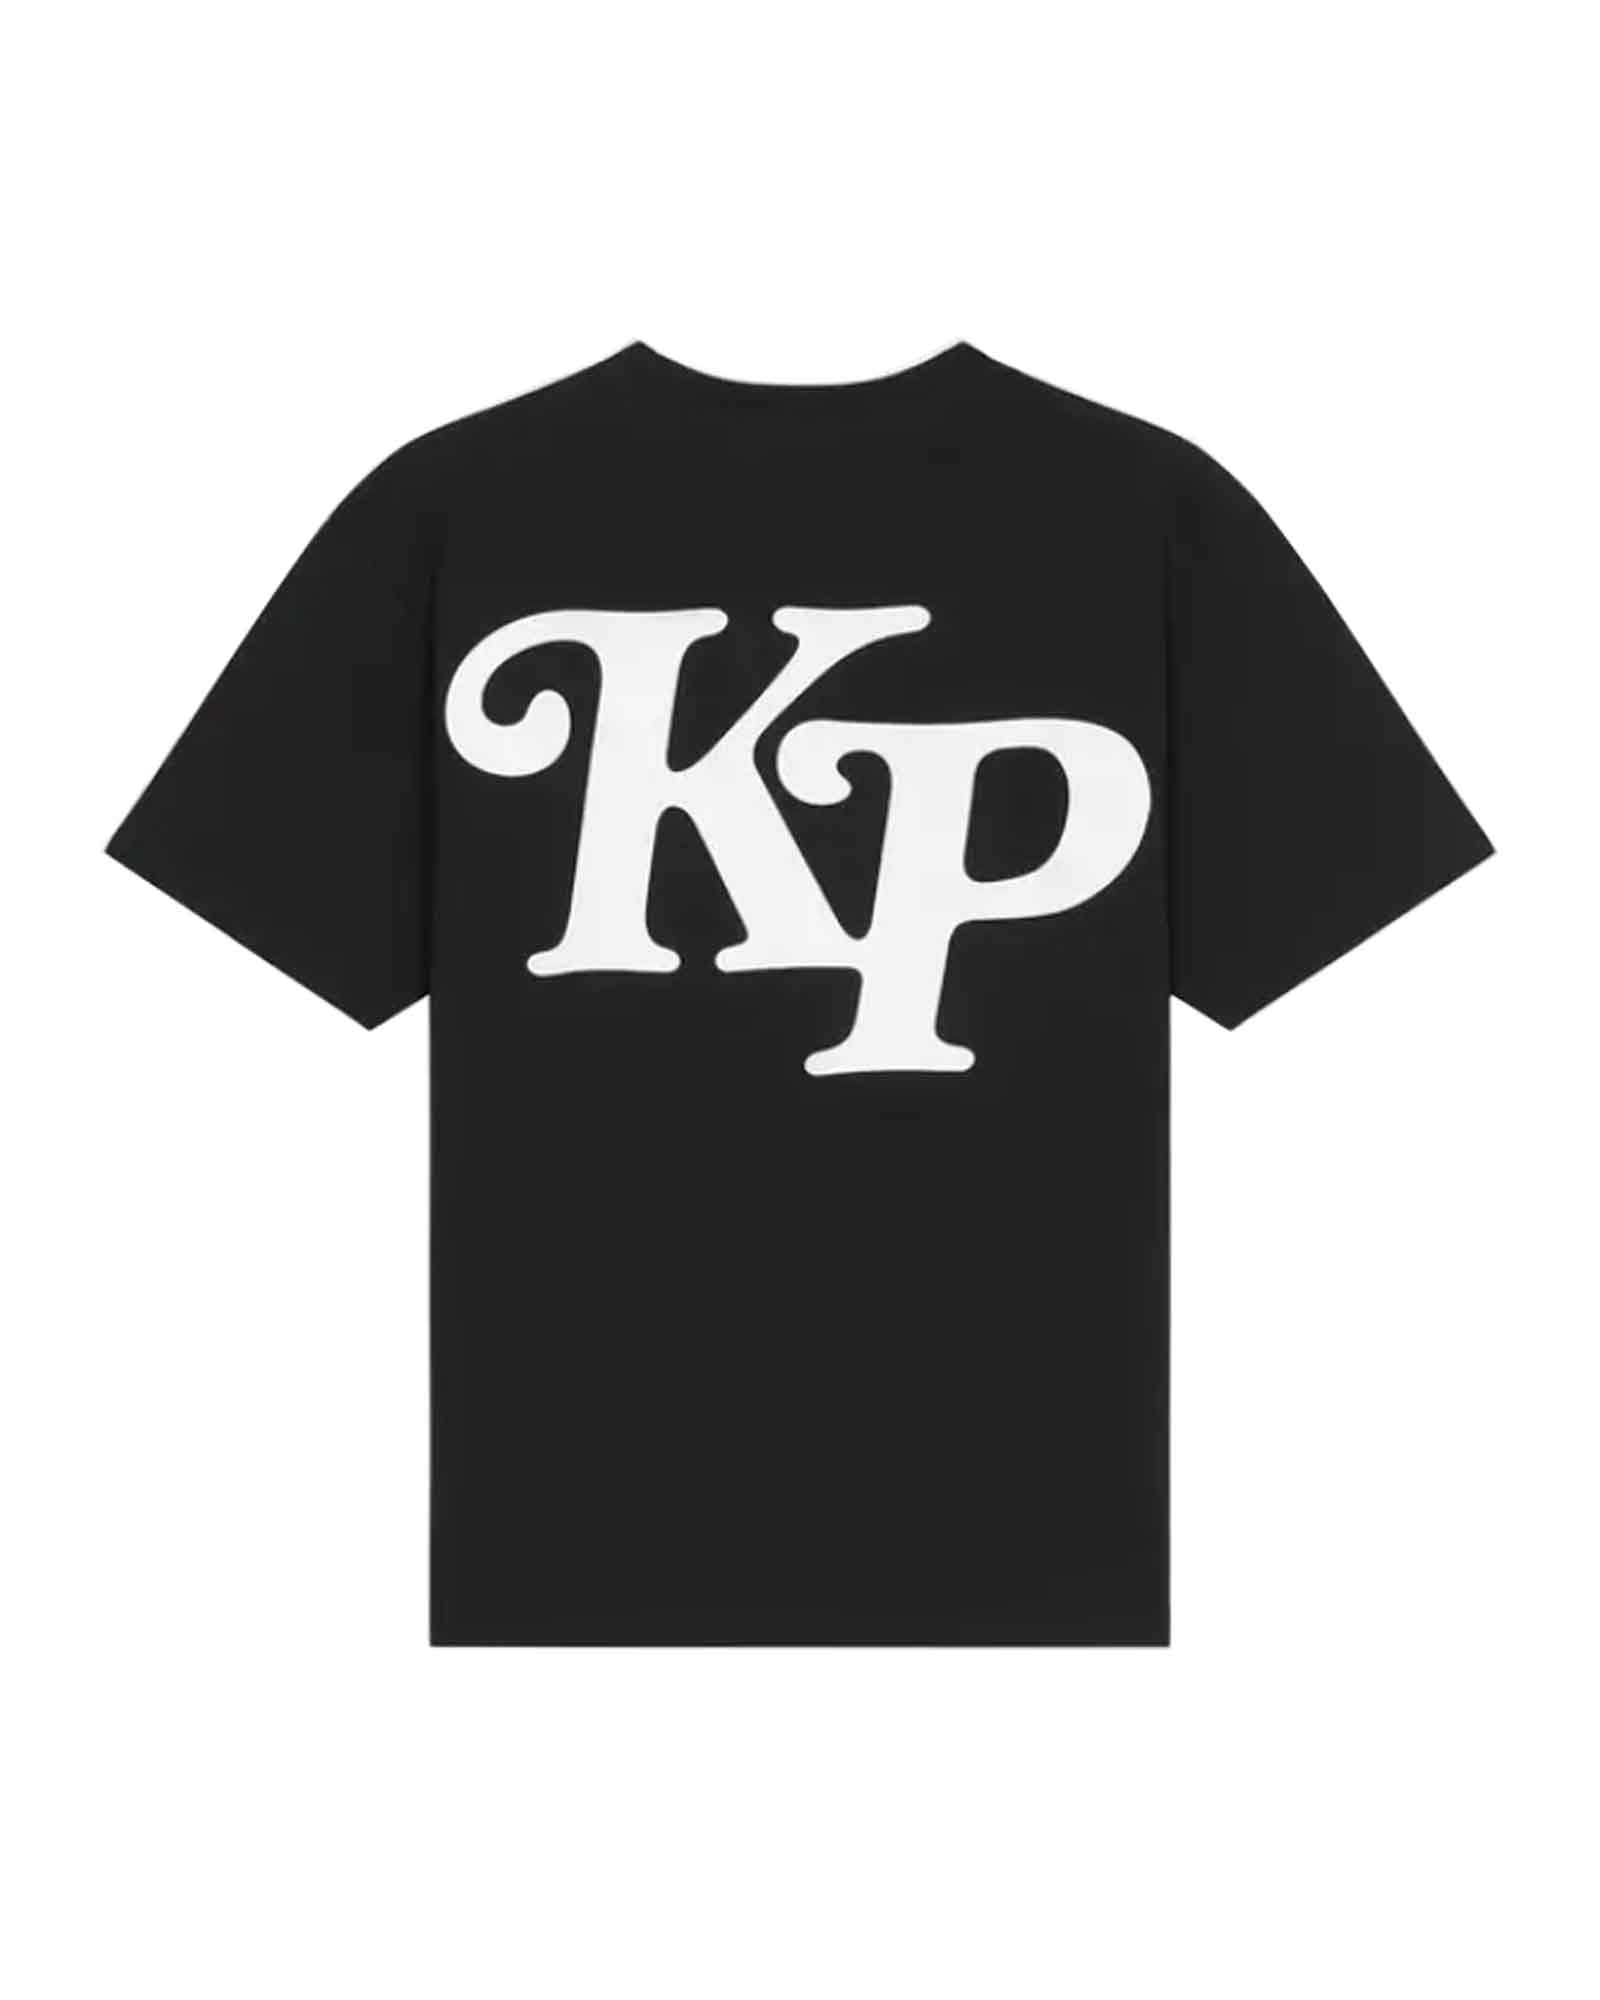 ケンゾー/KENZO BY VERDY OVERSIZE TSHIRT/Tシャツ/Black – Application